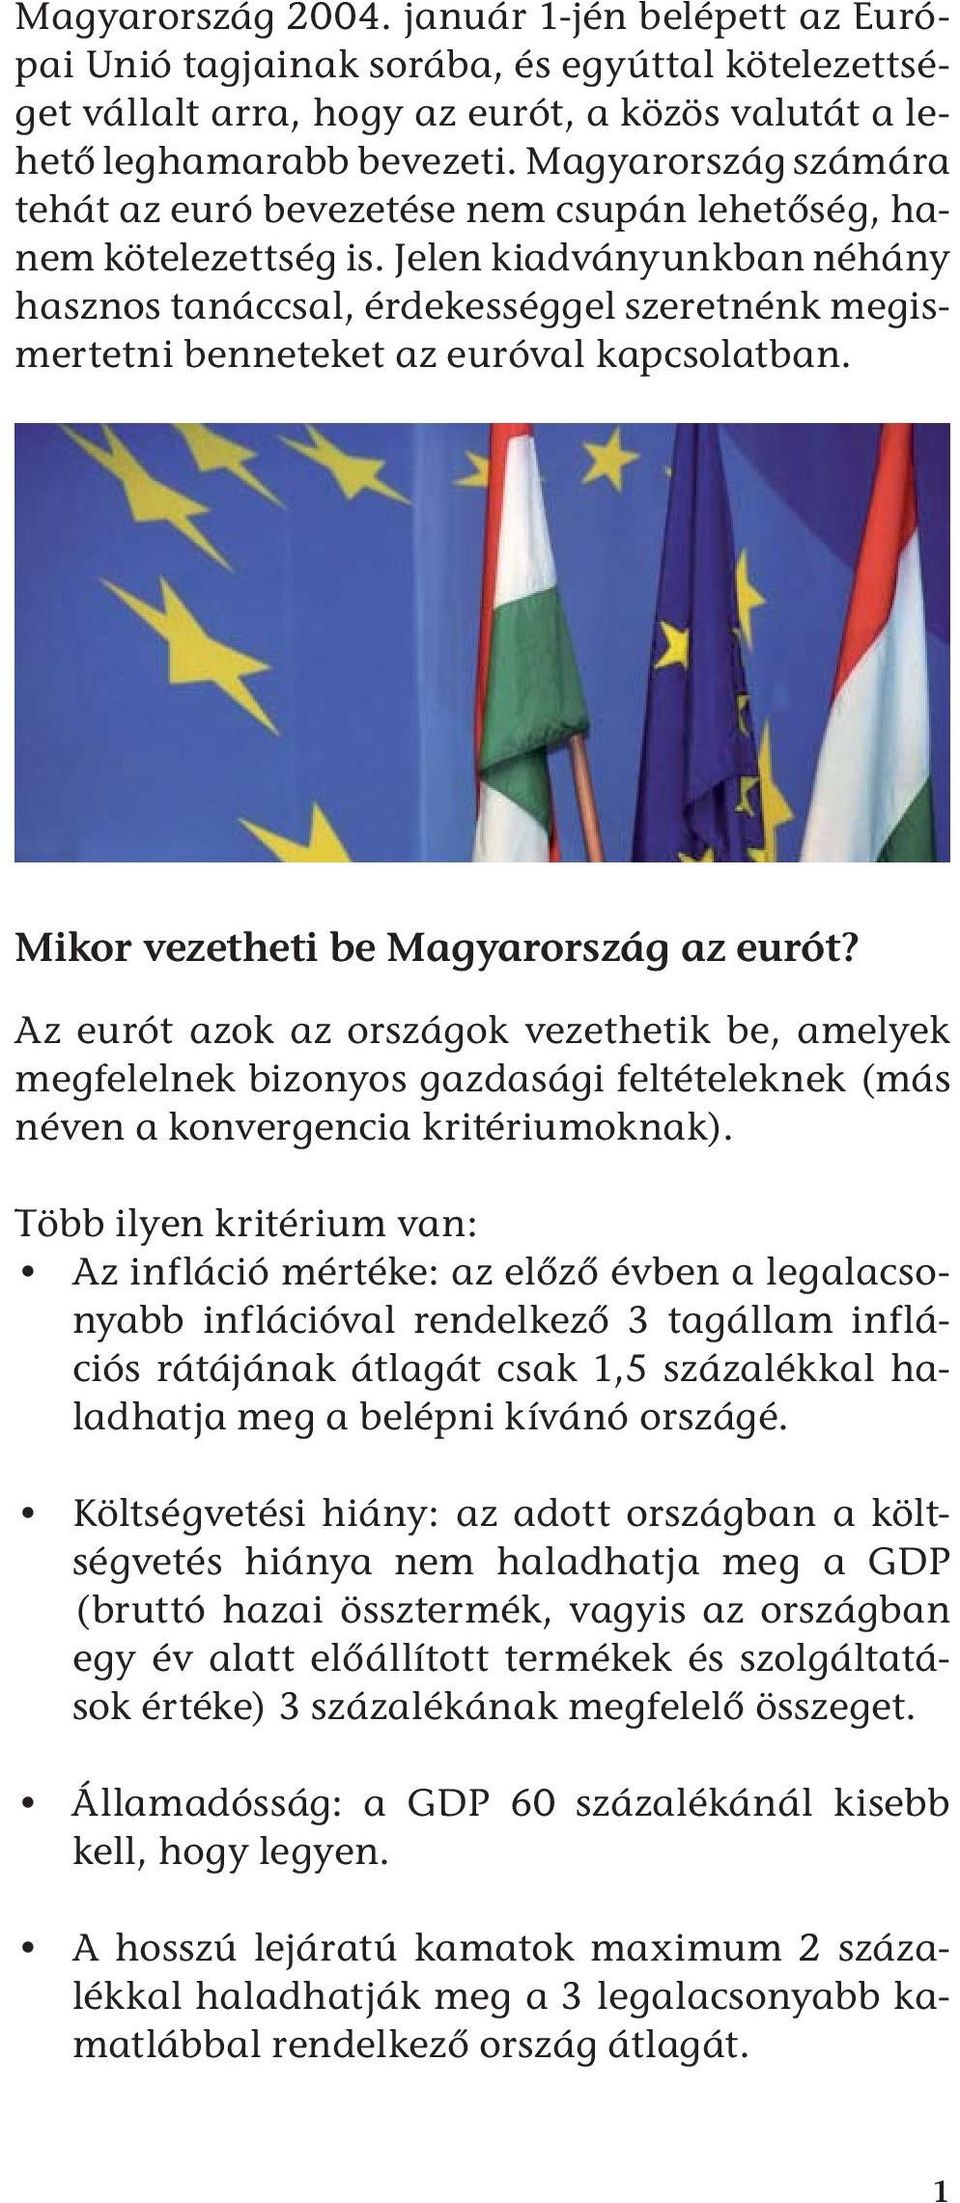 Jelen kiadványunkban néhány hasznos tanáccsal, érdekességgel szeretnénk megismertetni benneteket az euróval kapcsolatban. Mikor vezetheti be Magyarország az eurót?